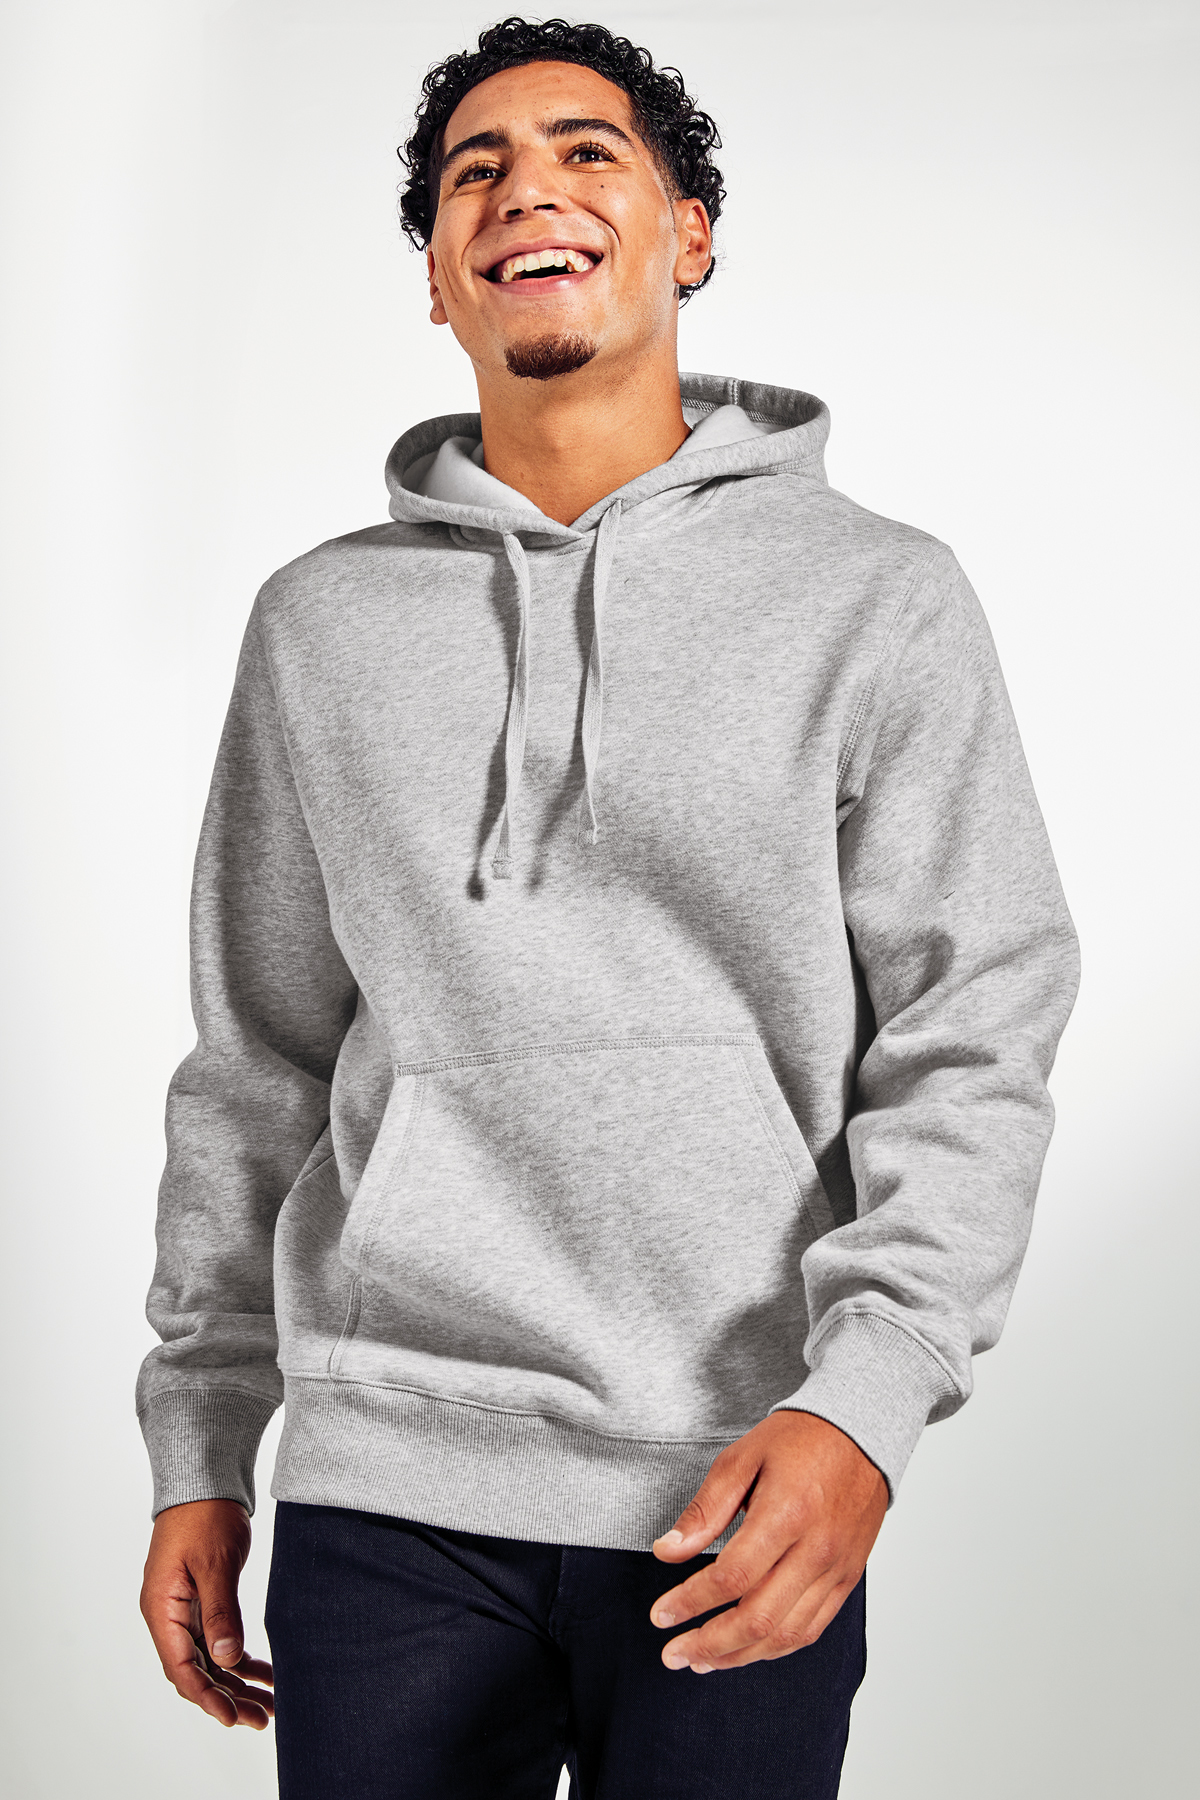 Sport-Tek Pullover Hooded Sweatshirt | Product | Sport-Tek | Hoodies